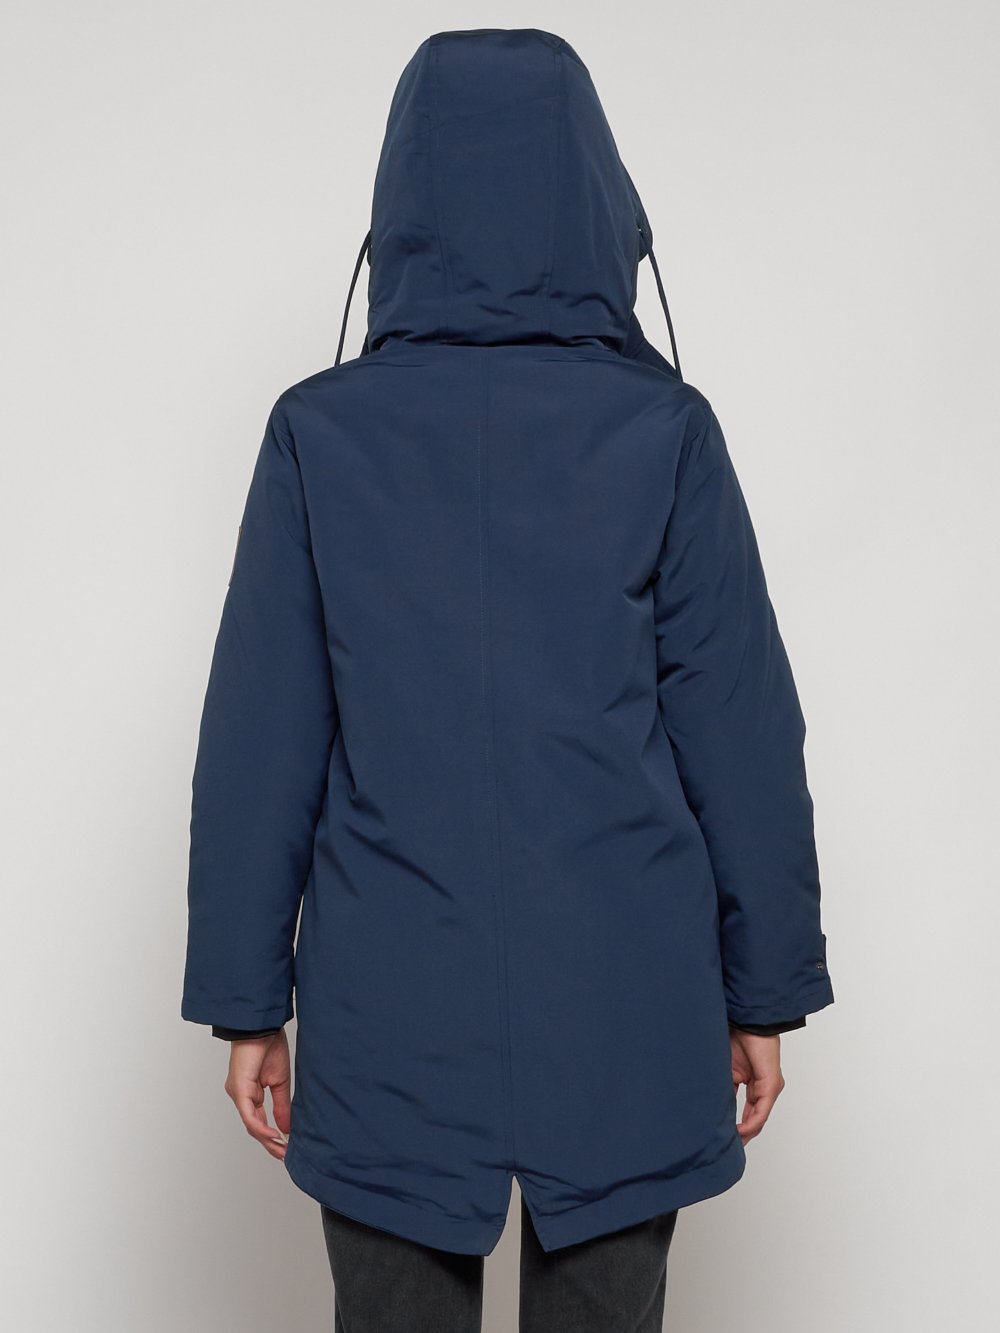 Купить куртку парку женскую оптом от производителя недорого в Москве 2329S 1